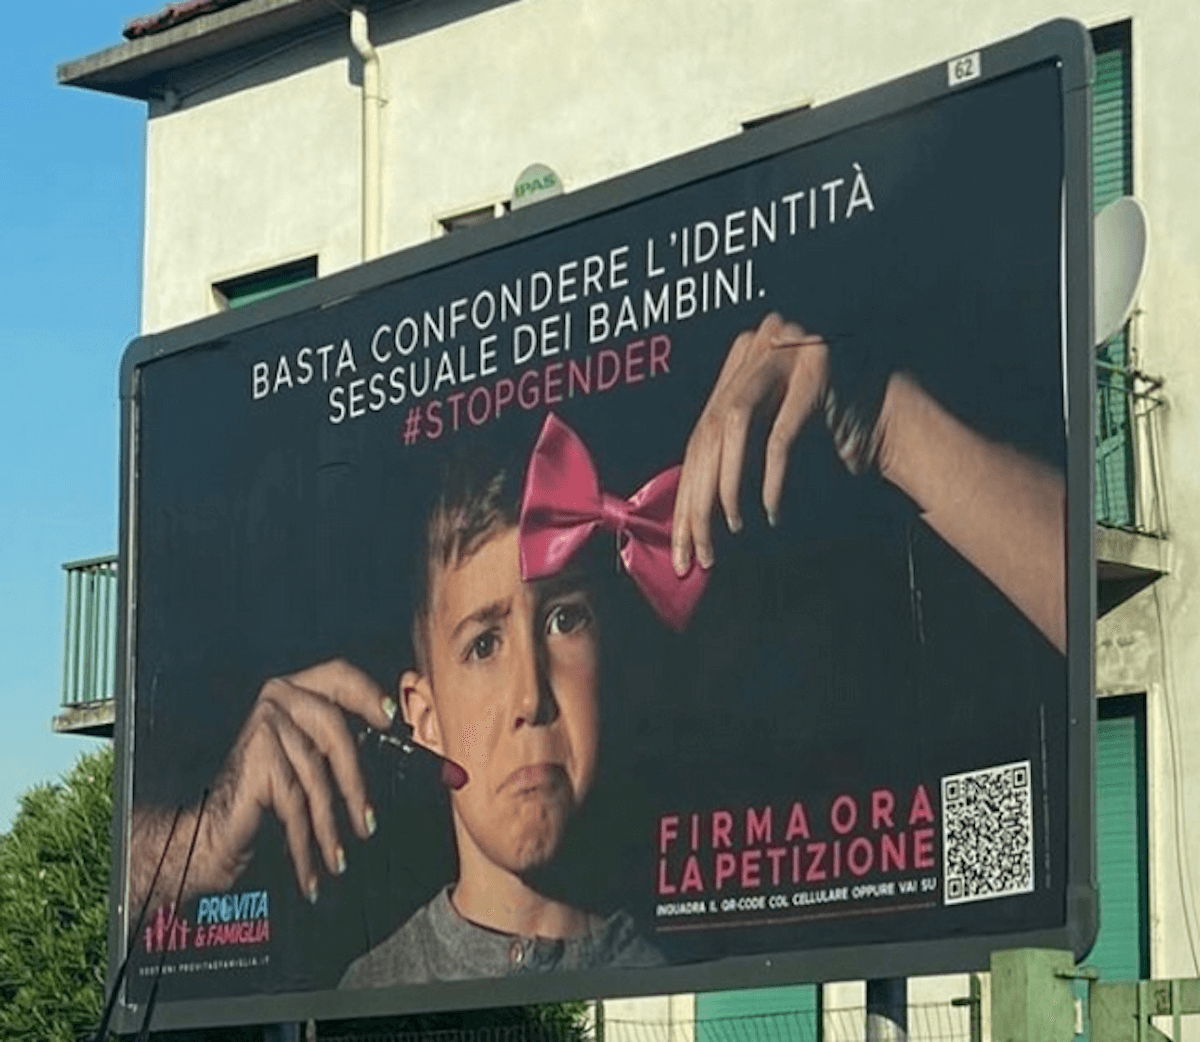 Famiglie Arcobaleno: "Siano rimossi i manifesti falsi e violenti di Pro Vita" - Pro Vita Famiglia Milano - Gay.it